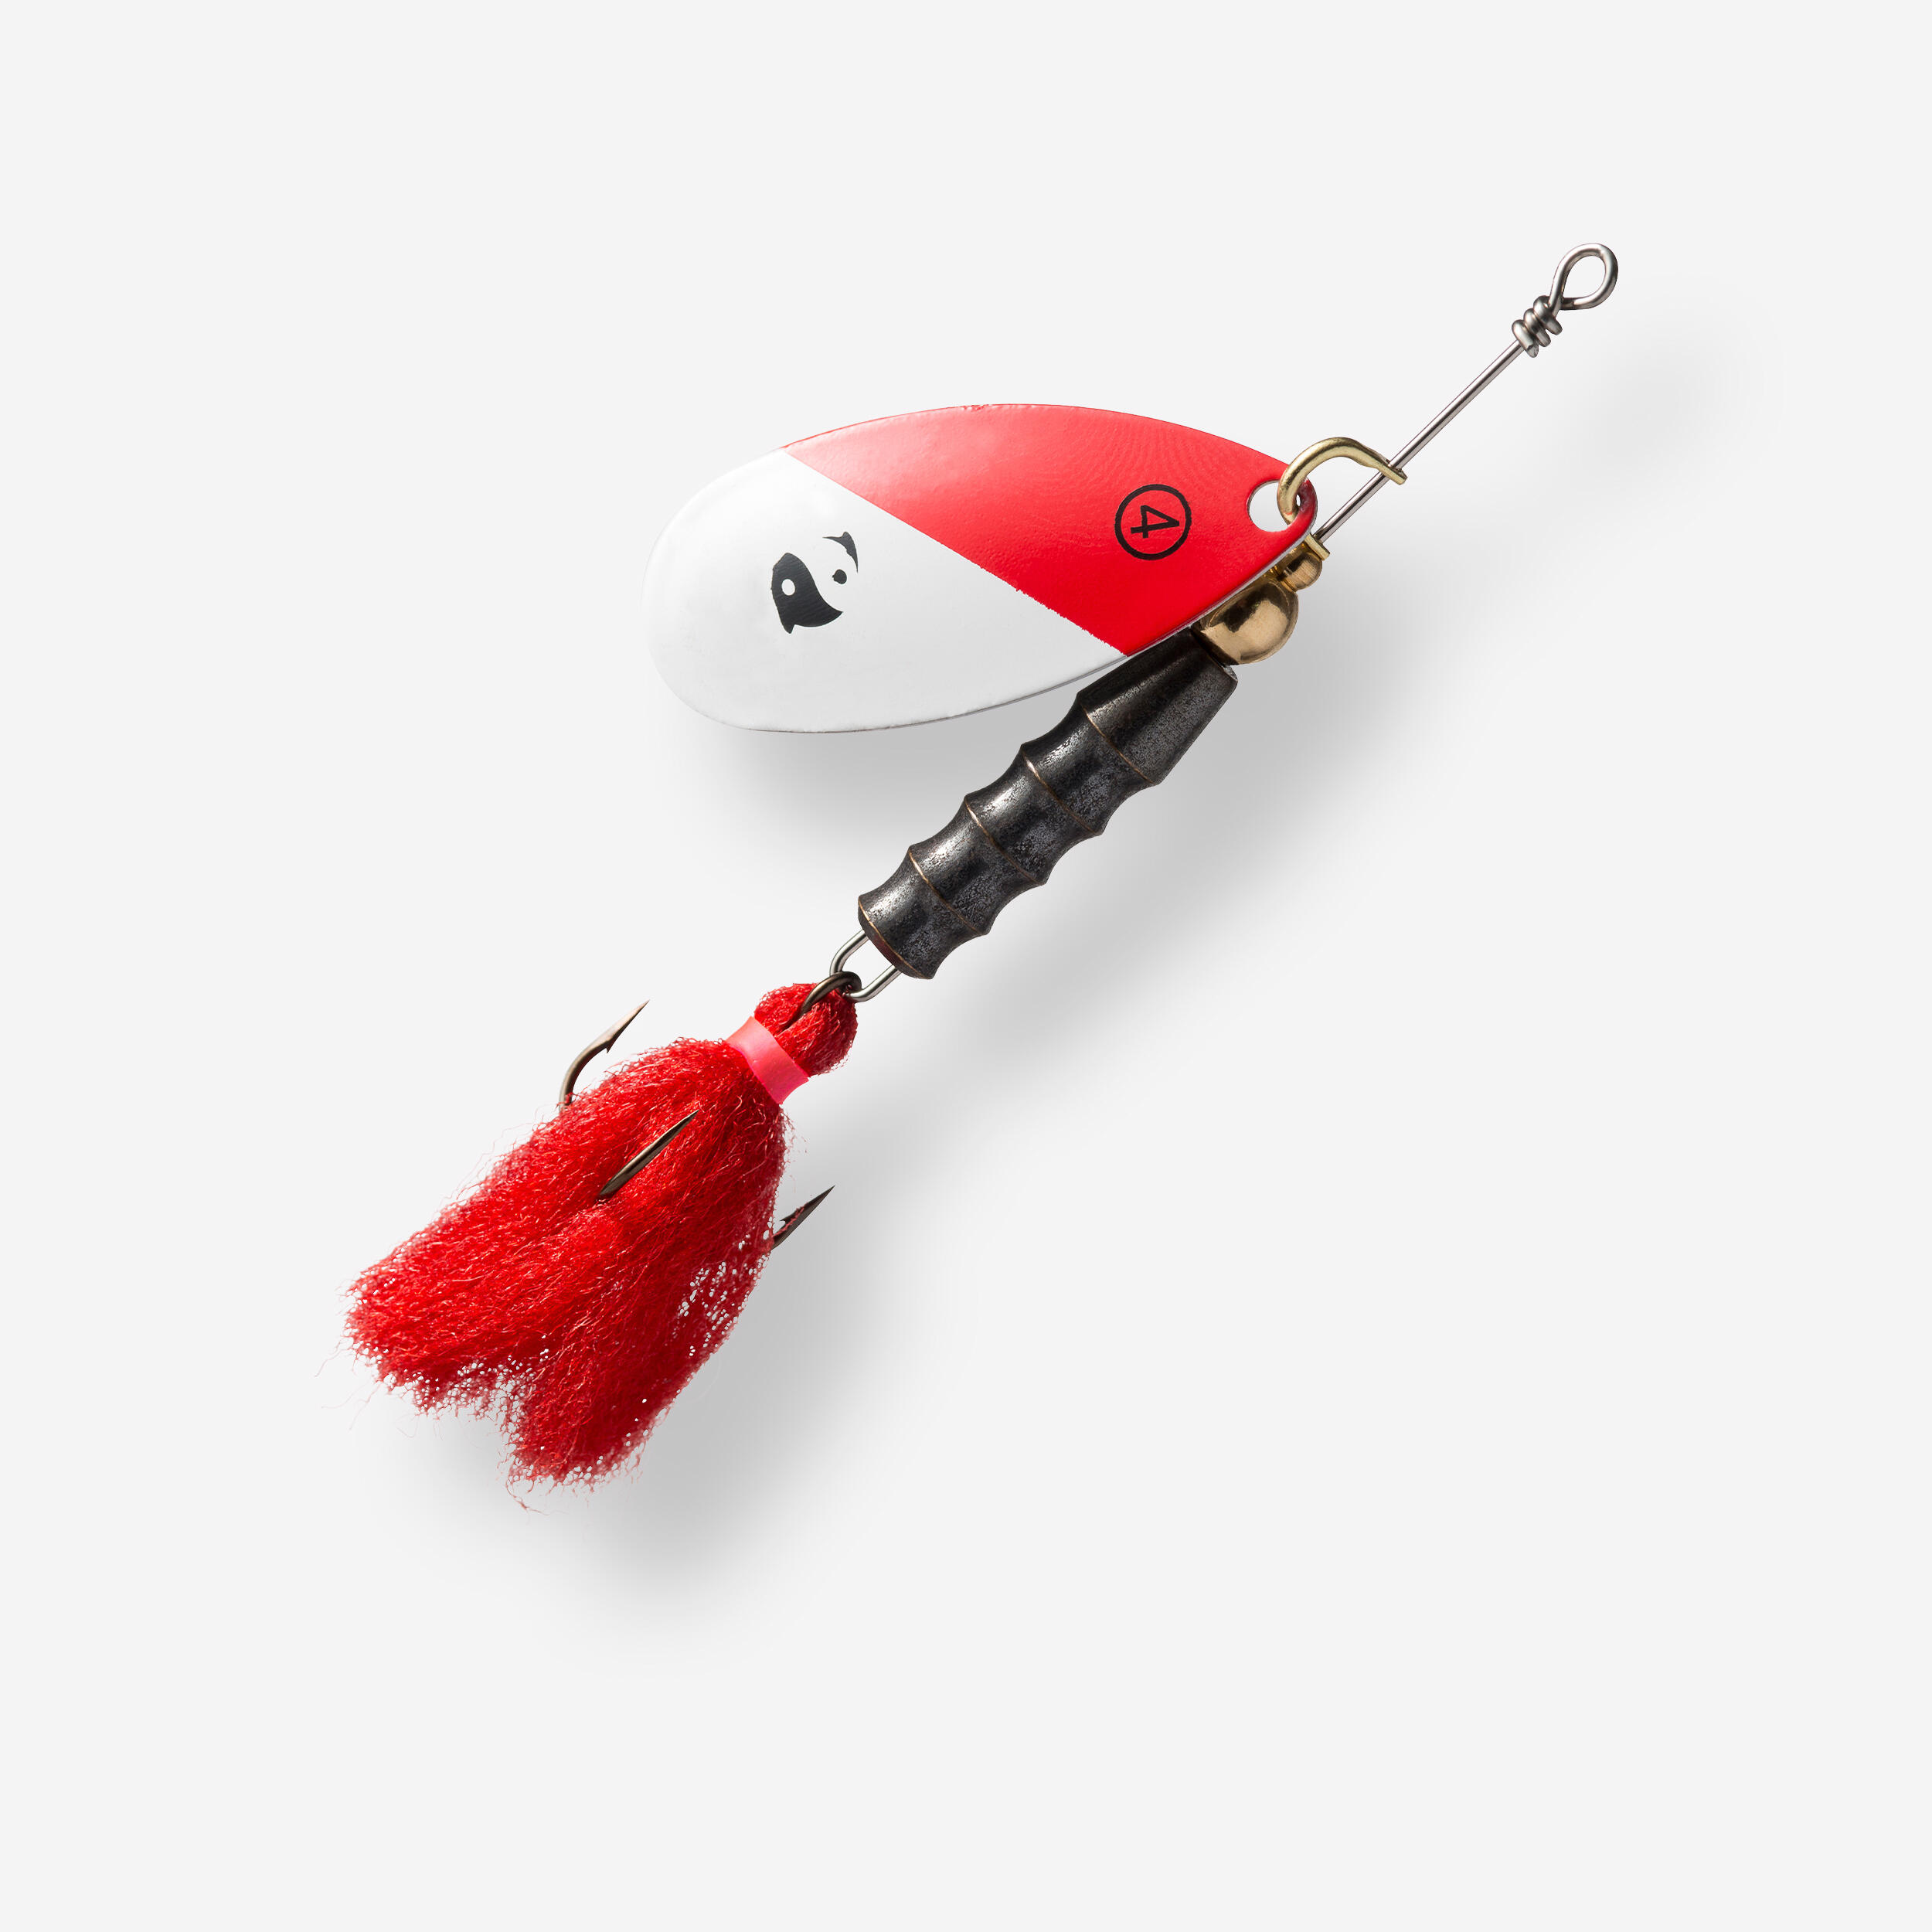 CAPERLAN WETA PUFF #4 RED HEAD PREDATOR FISHING SPINNER